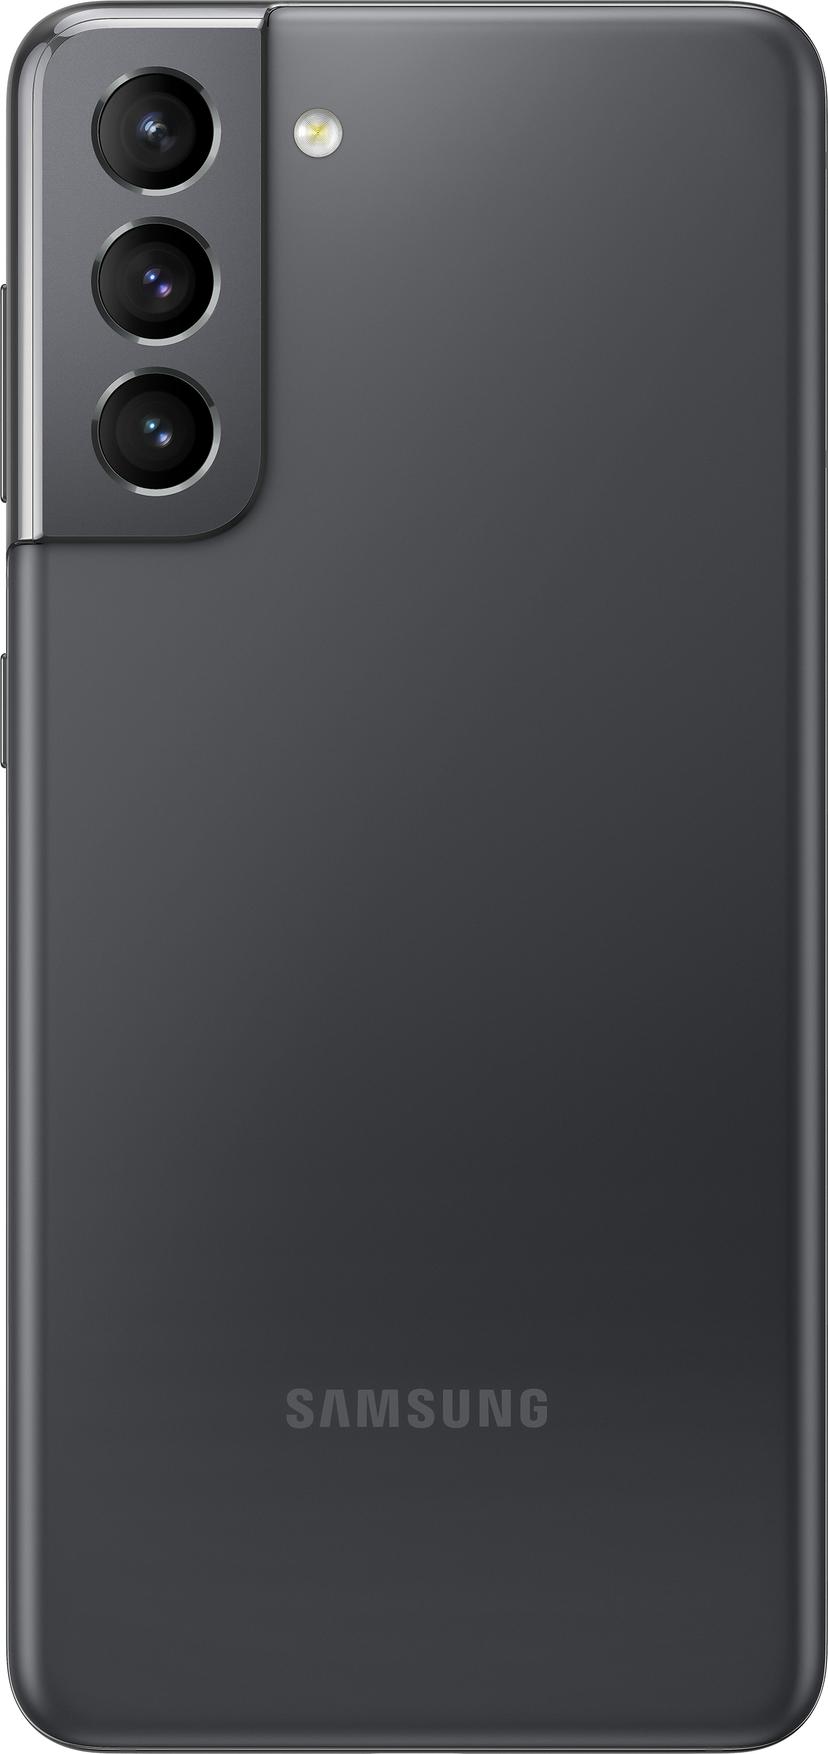 Samsung Galaxy S21 5G Enterprise Edition 128GB Dual-SIM Fantomgrå